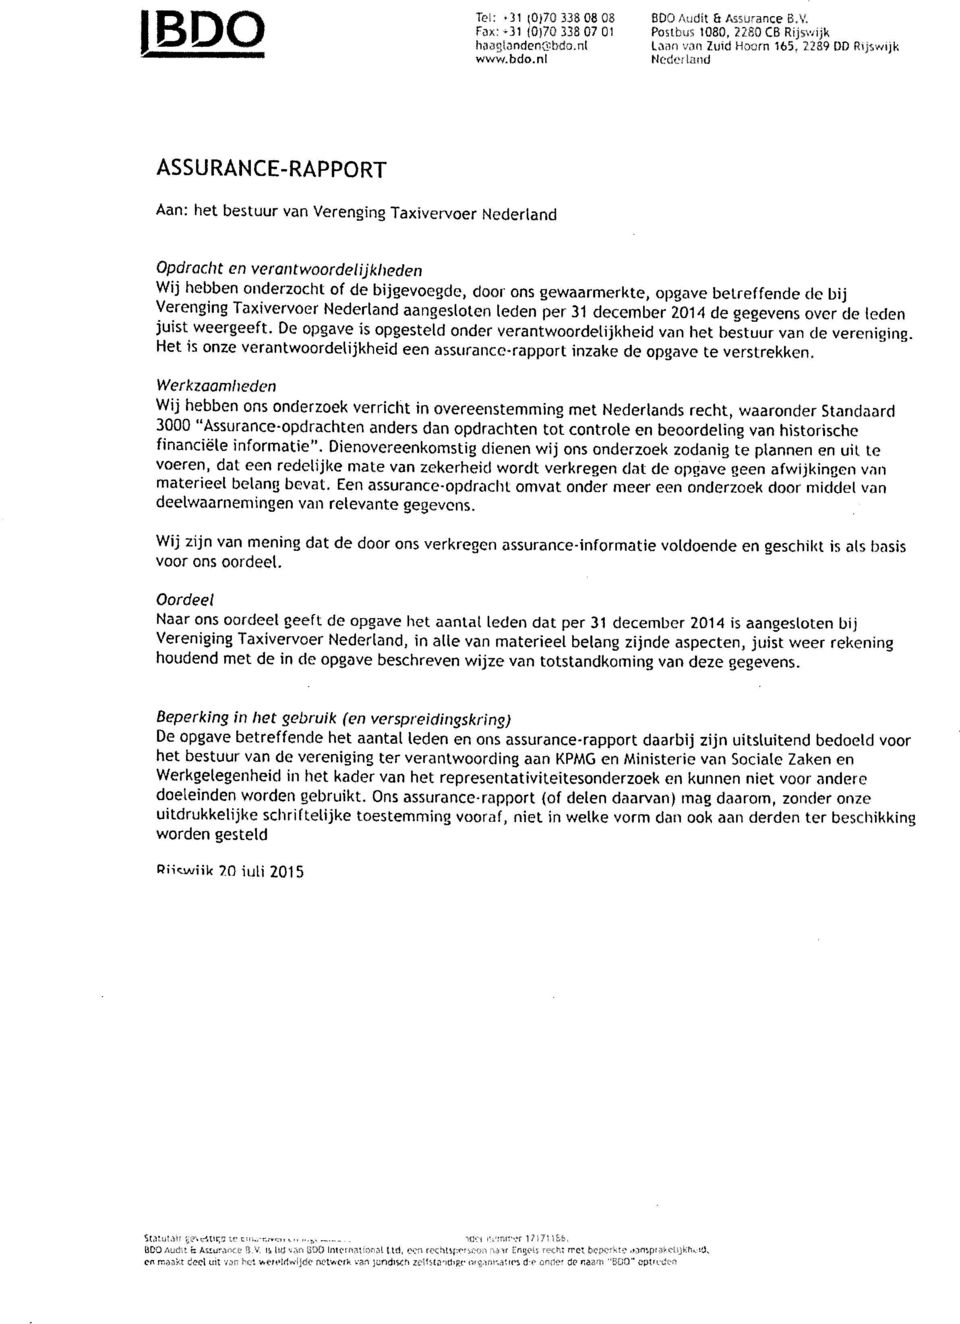 onderzocht of de bijgevoegde, door ons gewaarmerkte, opgave betreffende de bij Verenging Taxivervoer Nederland aangesloten leden per 31 december 2014 de gegevens over de leden juist weergeeft.